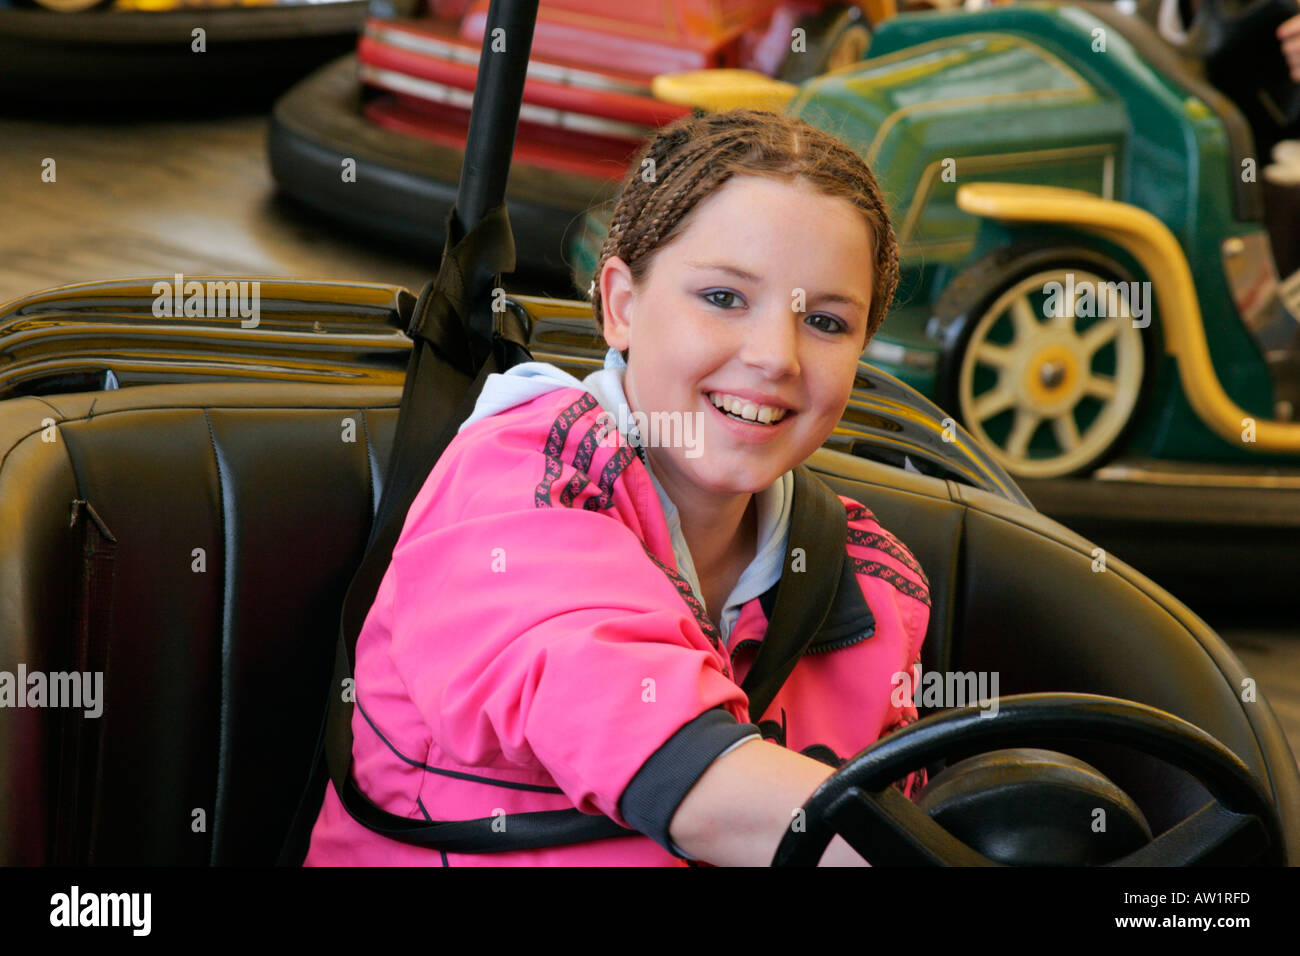 Happy smiling teenage girl on dodgems at fairground Stock Photo